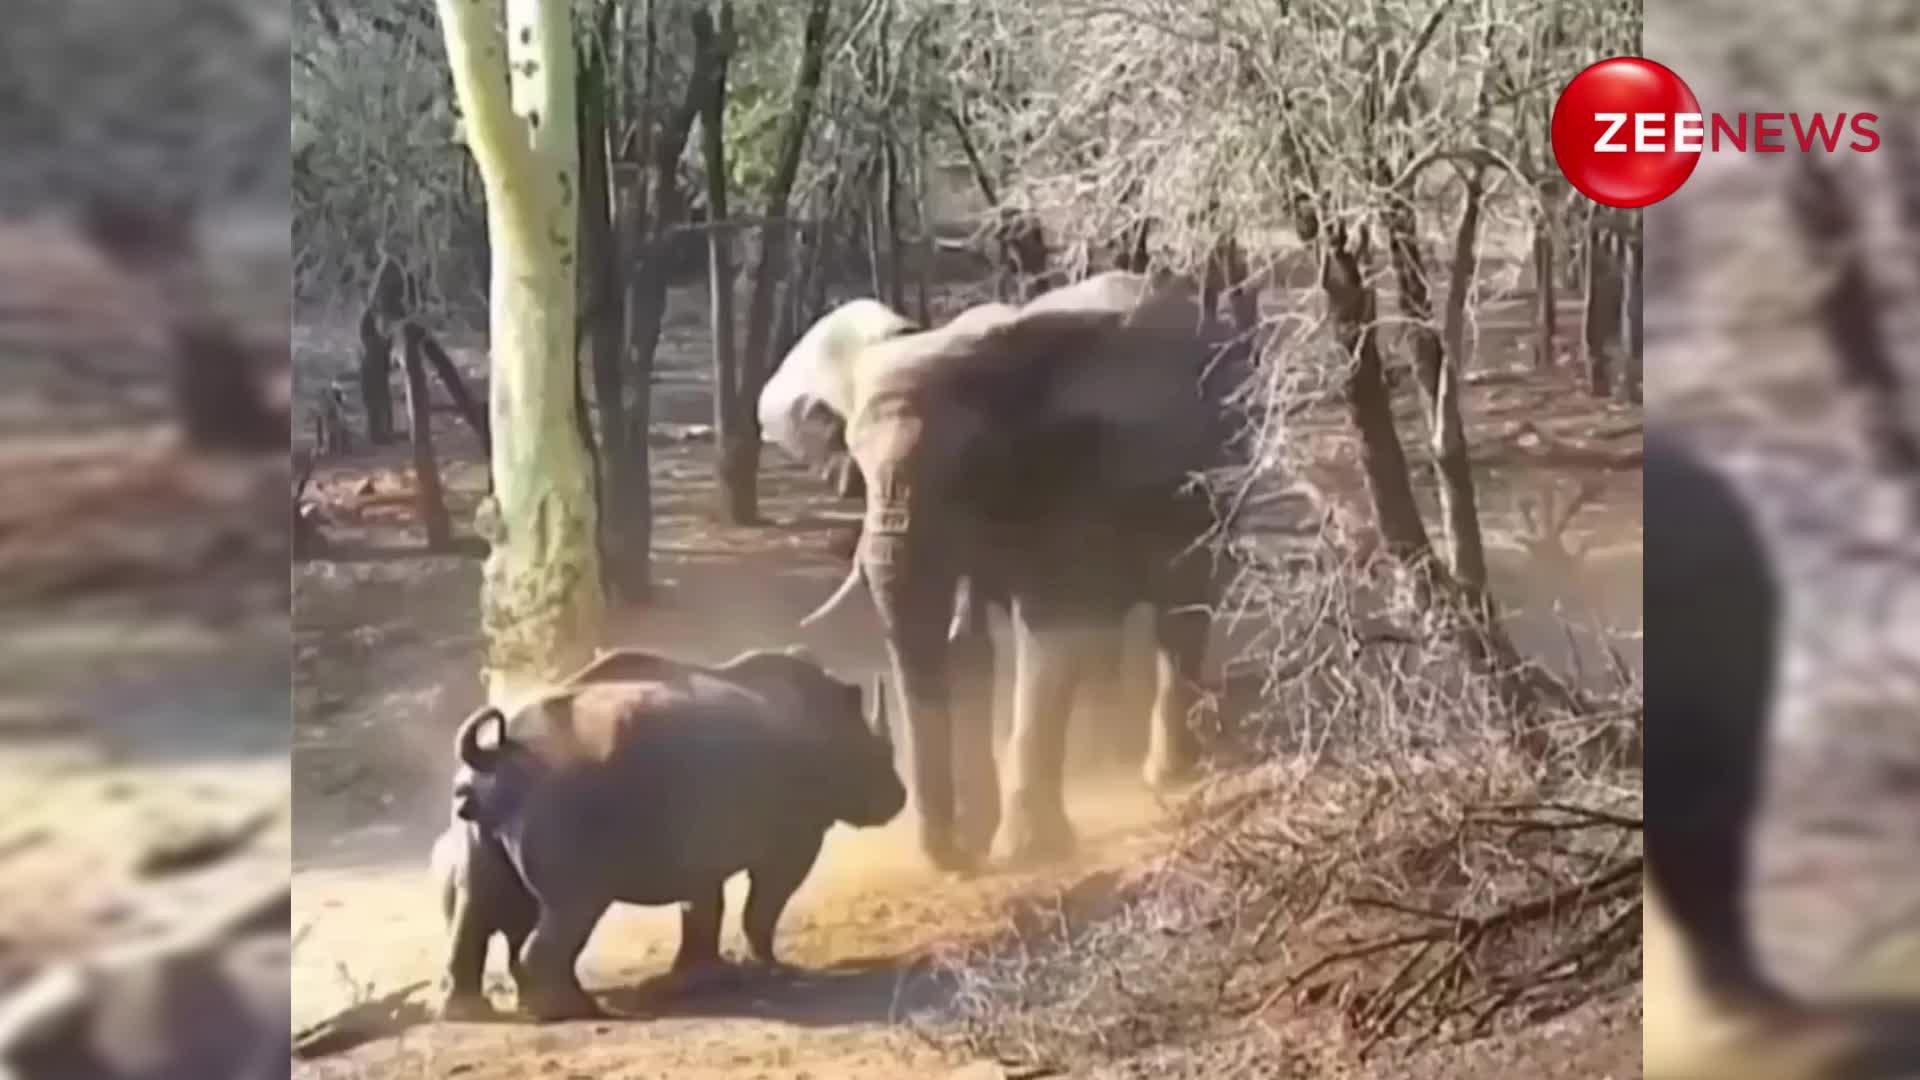 अपने नन्हे बच्चे को गुस्सेबाज हाथी से बचाने के लिए भिड़ गया गैंडा, जान की बाजी लगाकर किया अटैक